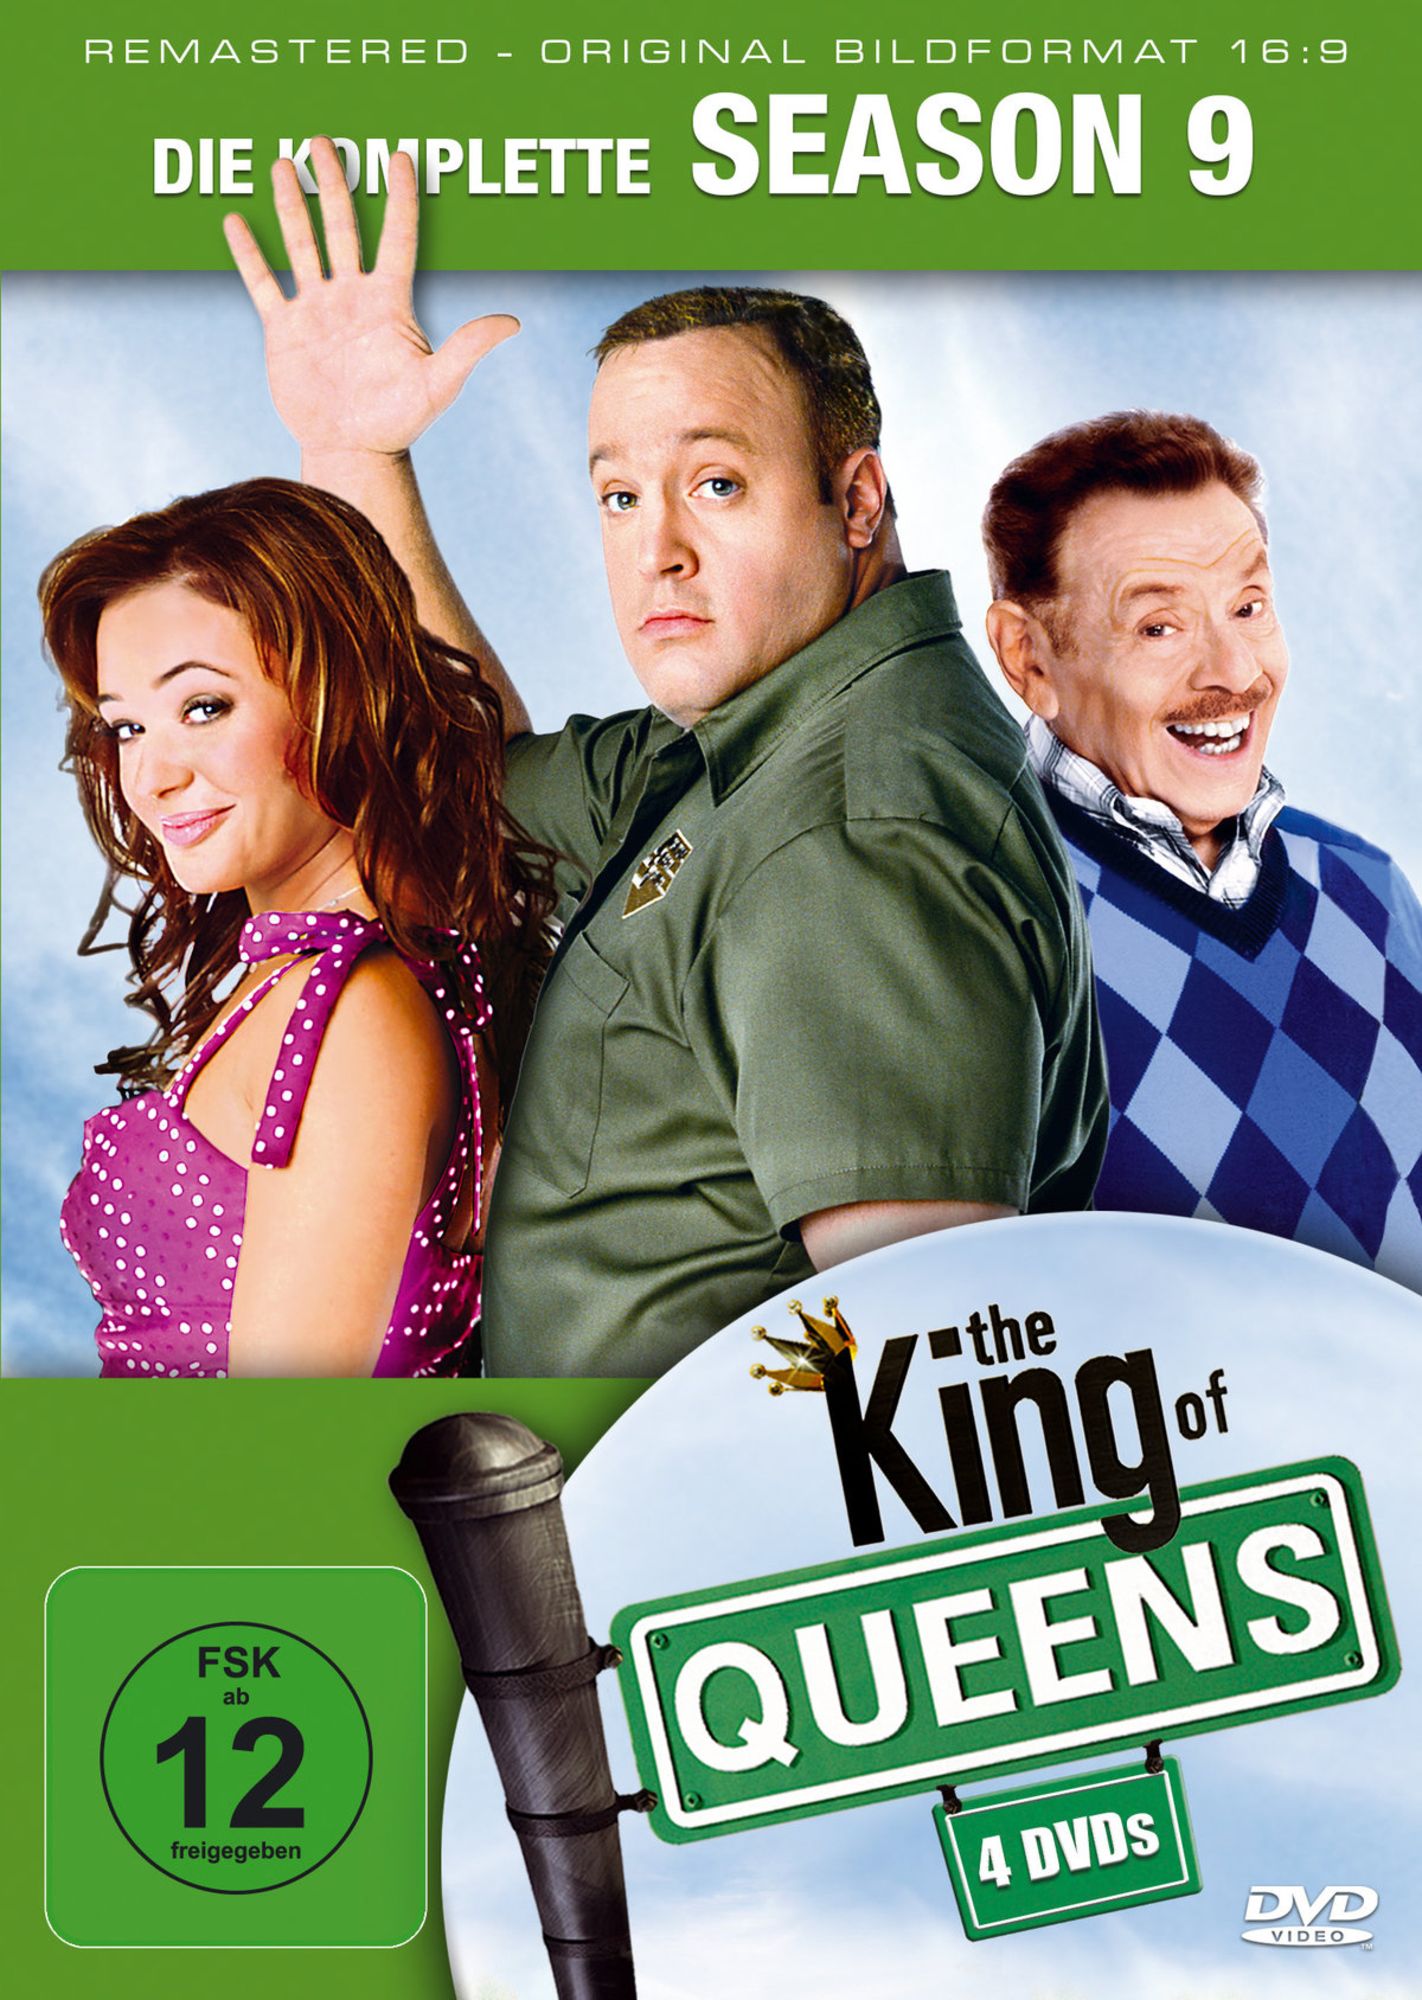 The King of Queens - Staffel 9' von 'Rob Schiller' - 'DVD